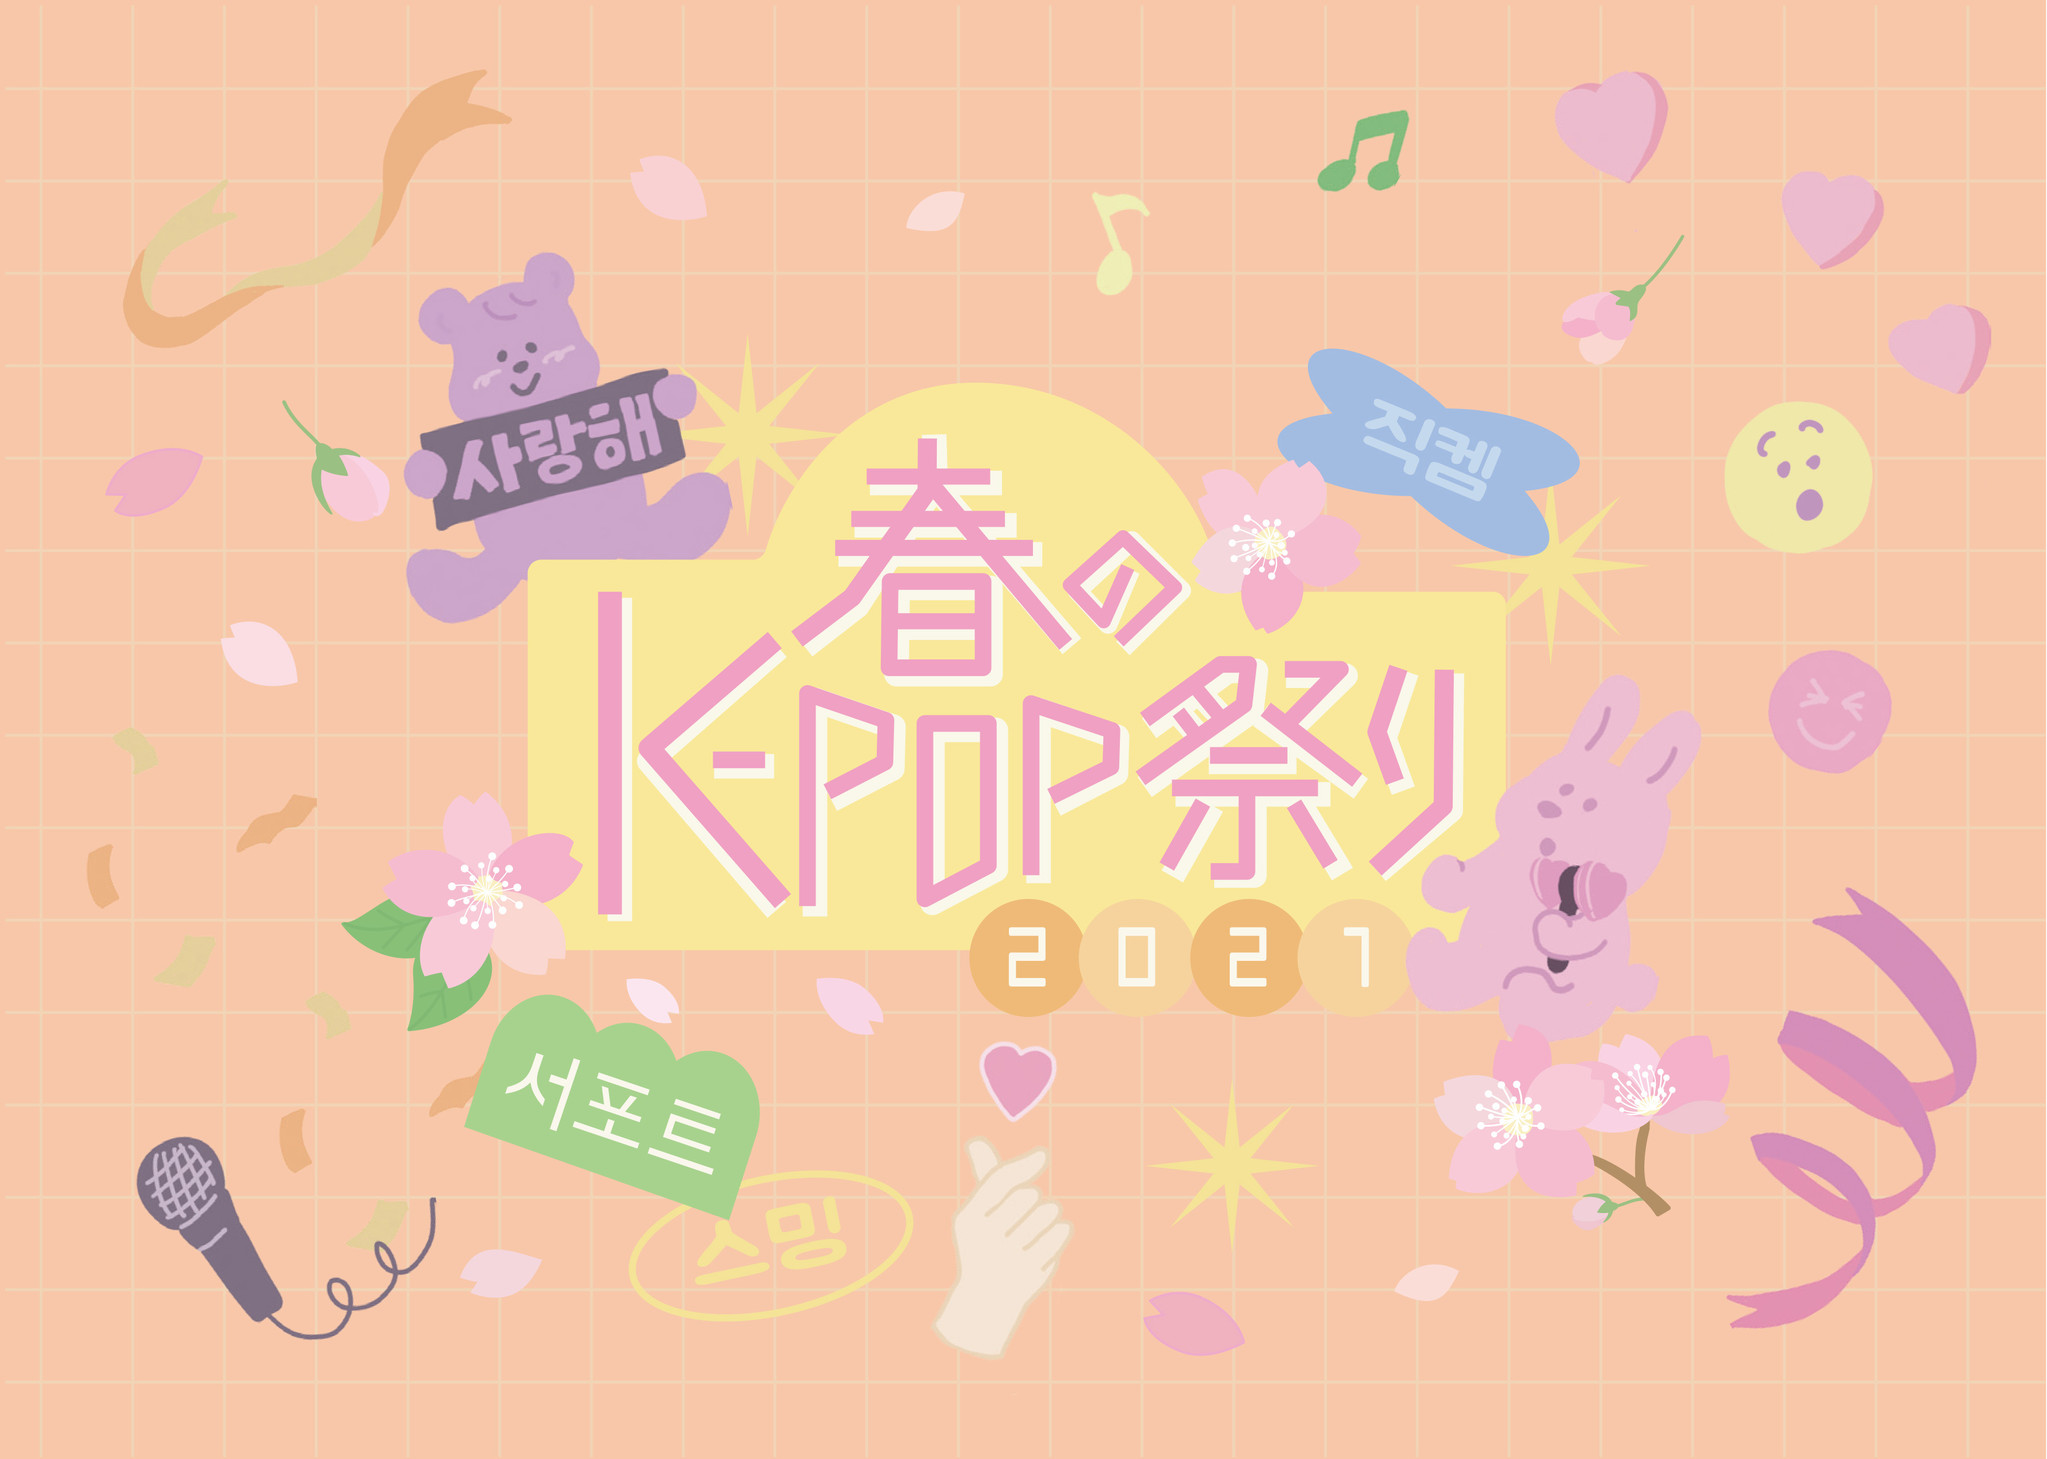 次に来るのは「K-POP本」!?　出版３社共催ブックフェア「春のK-POP祭り」が全国で開催